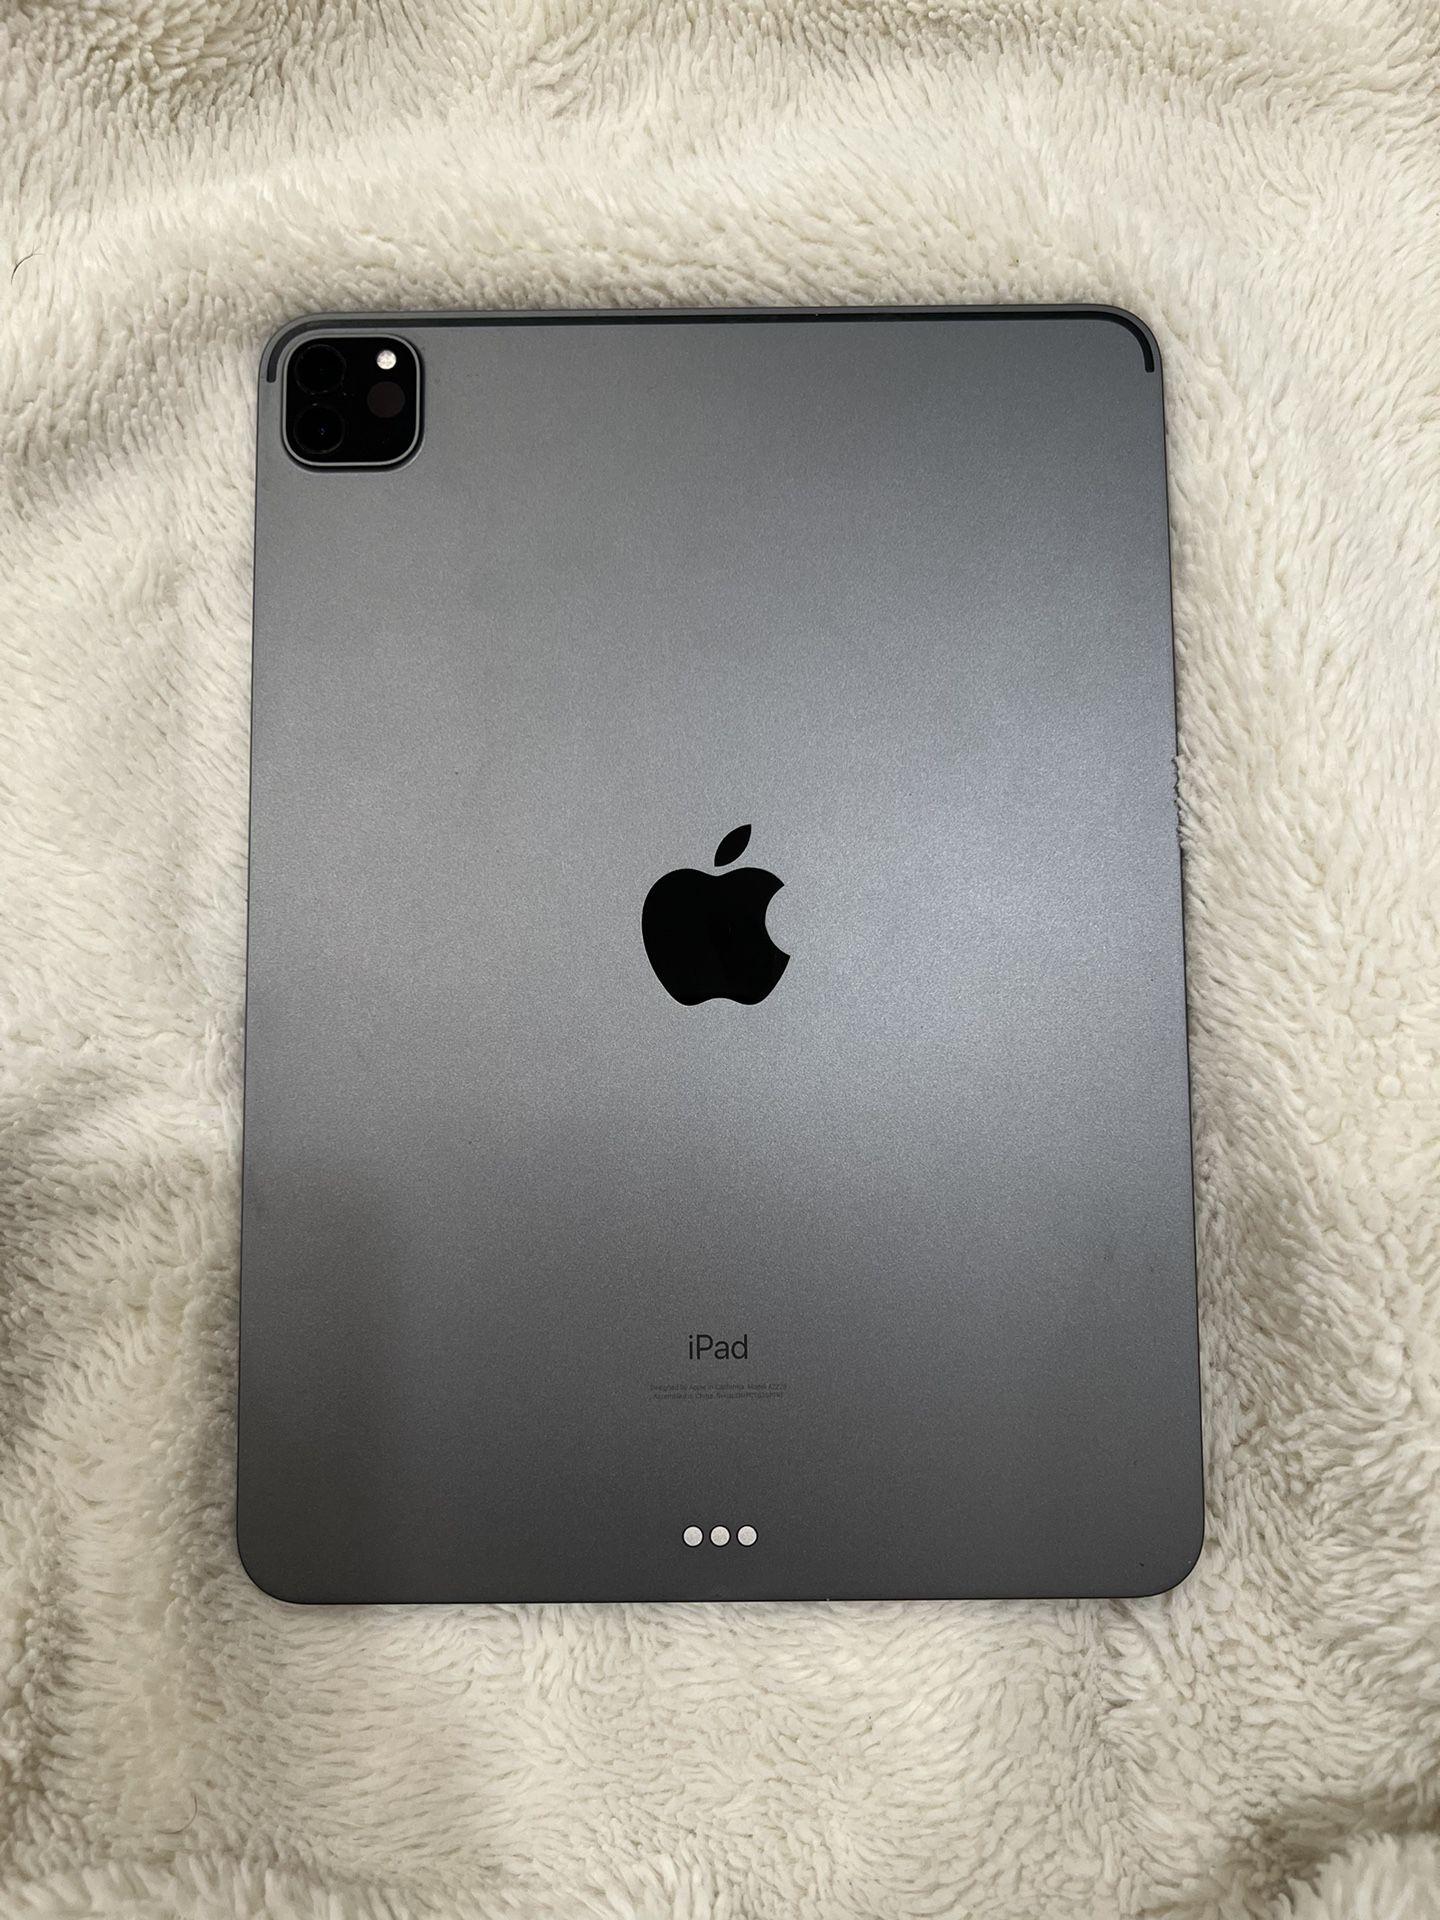 iPad Pro 11 (2nd Gen) 128gb